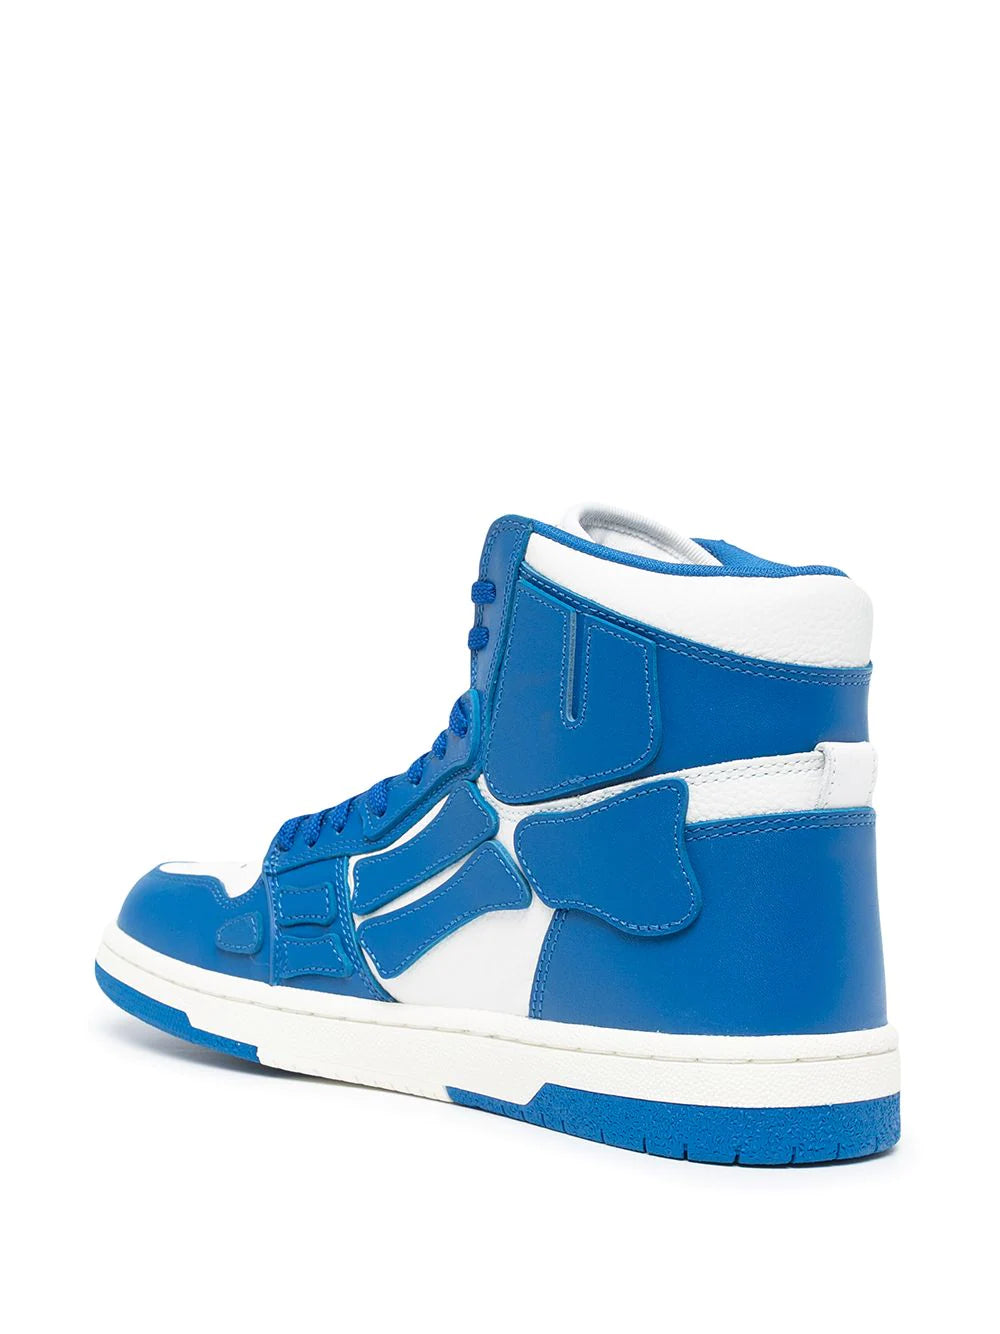 Amiri Blue Skel-Top Sneakers